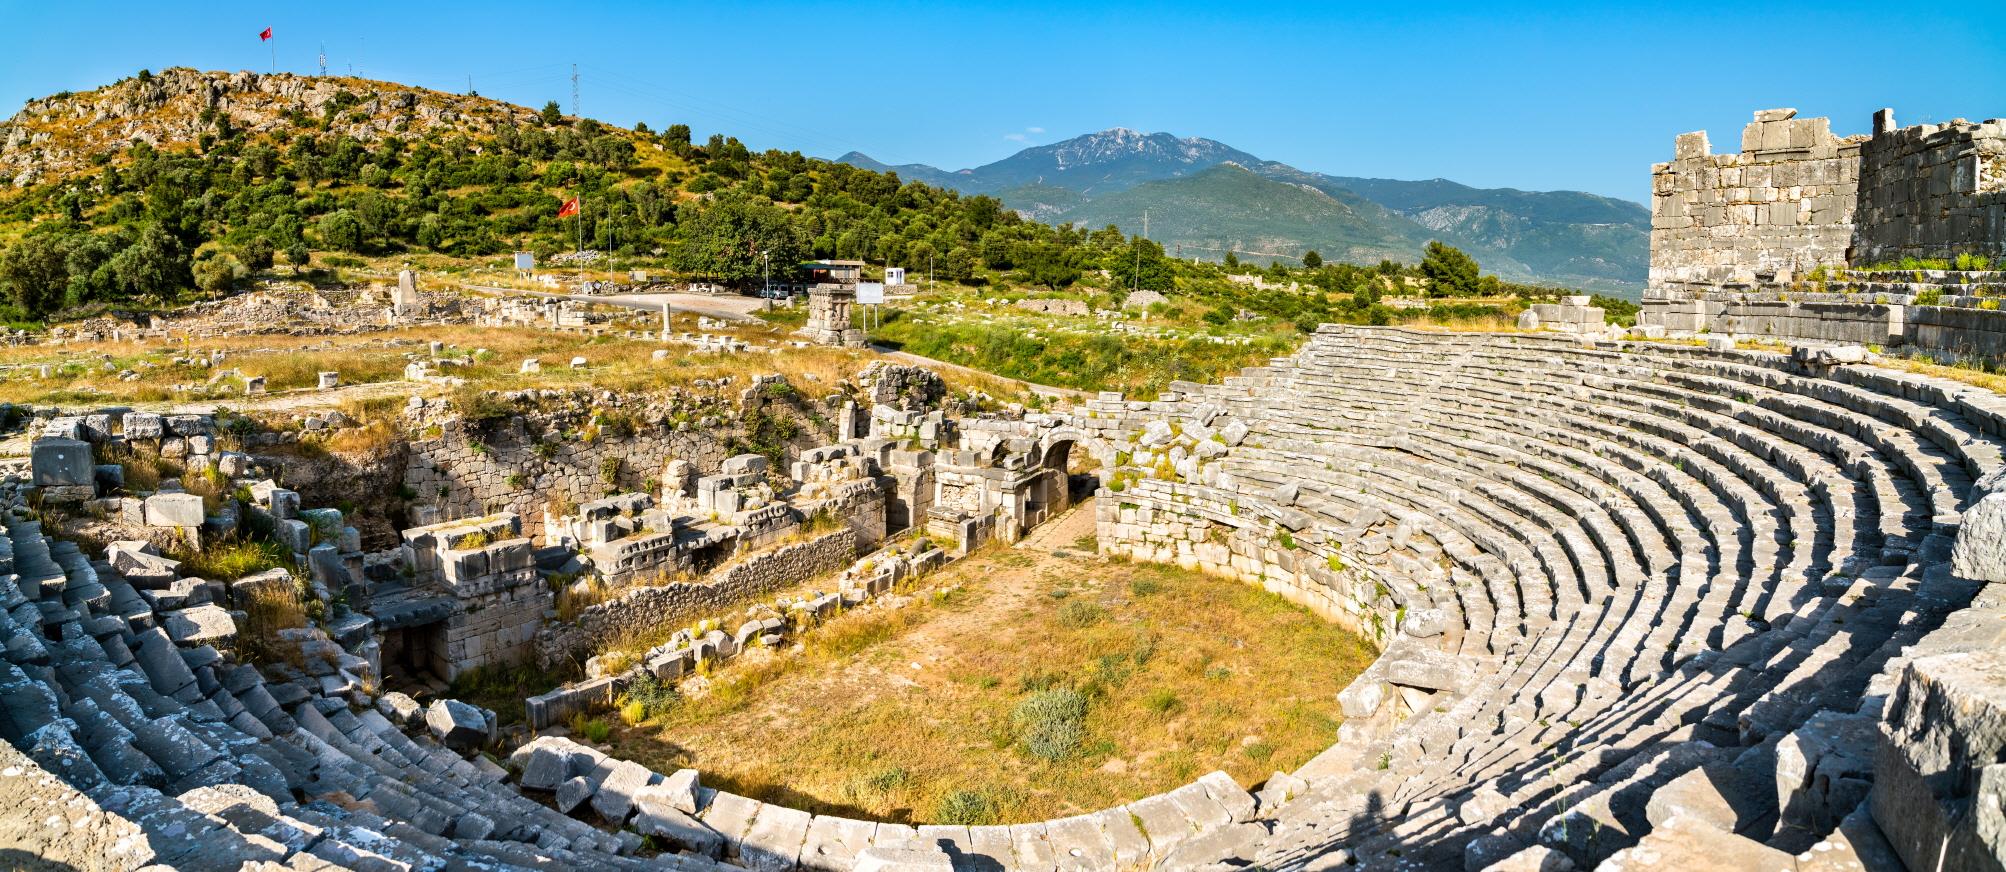 크산토스 유적지  Xanthos Ruins